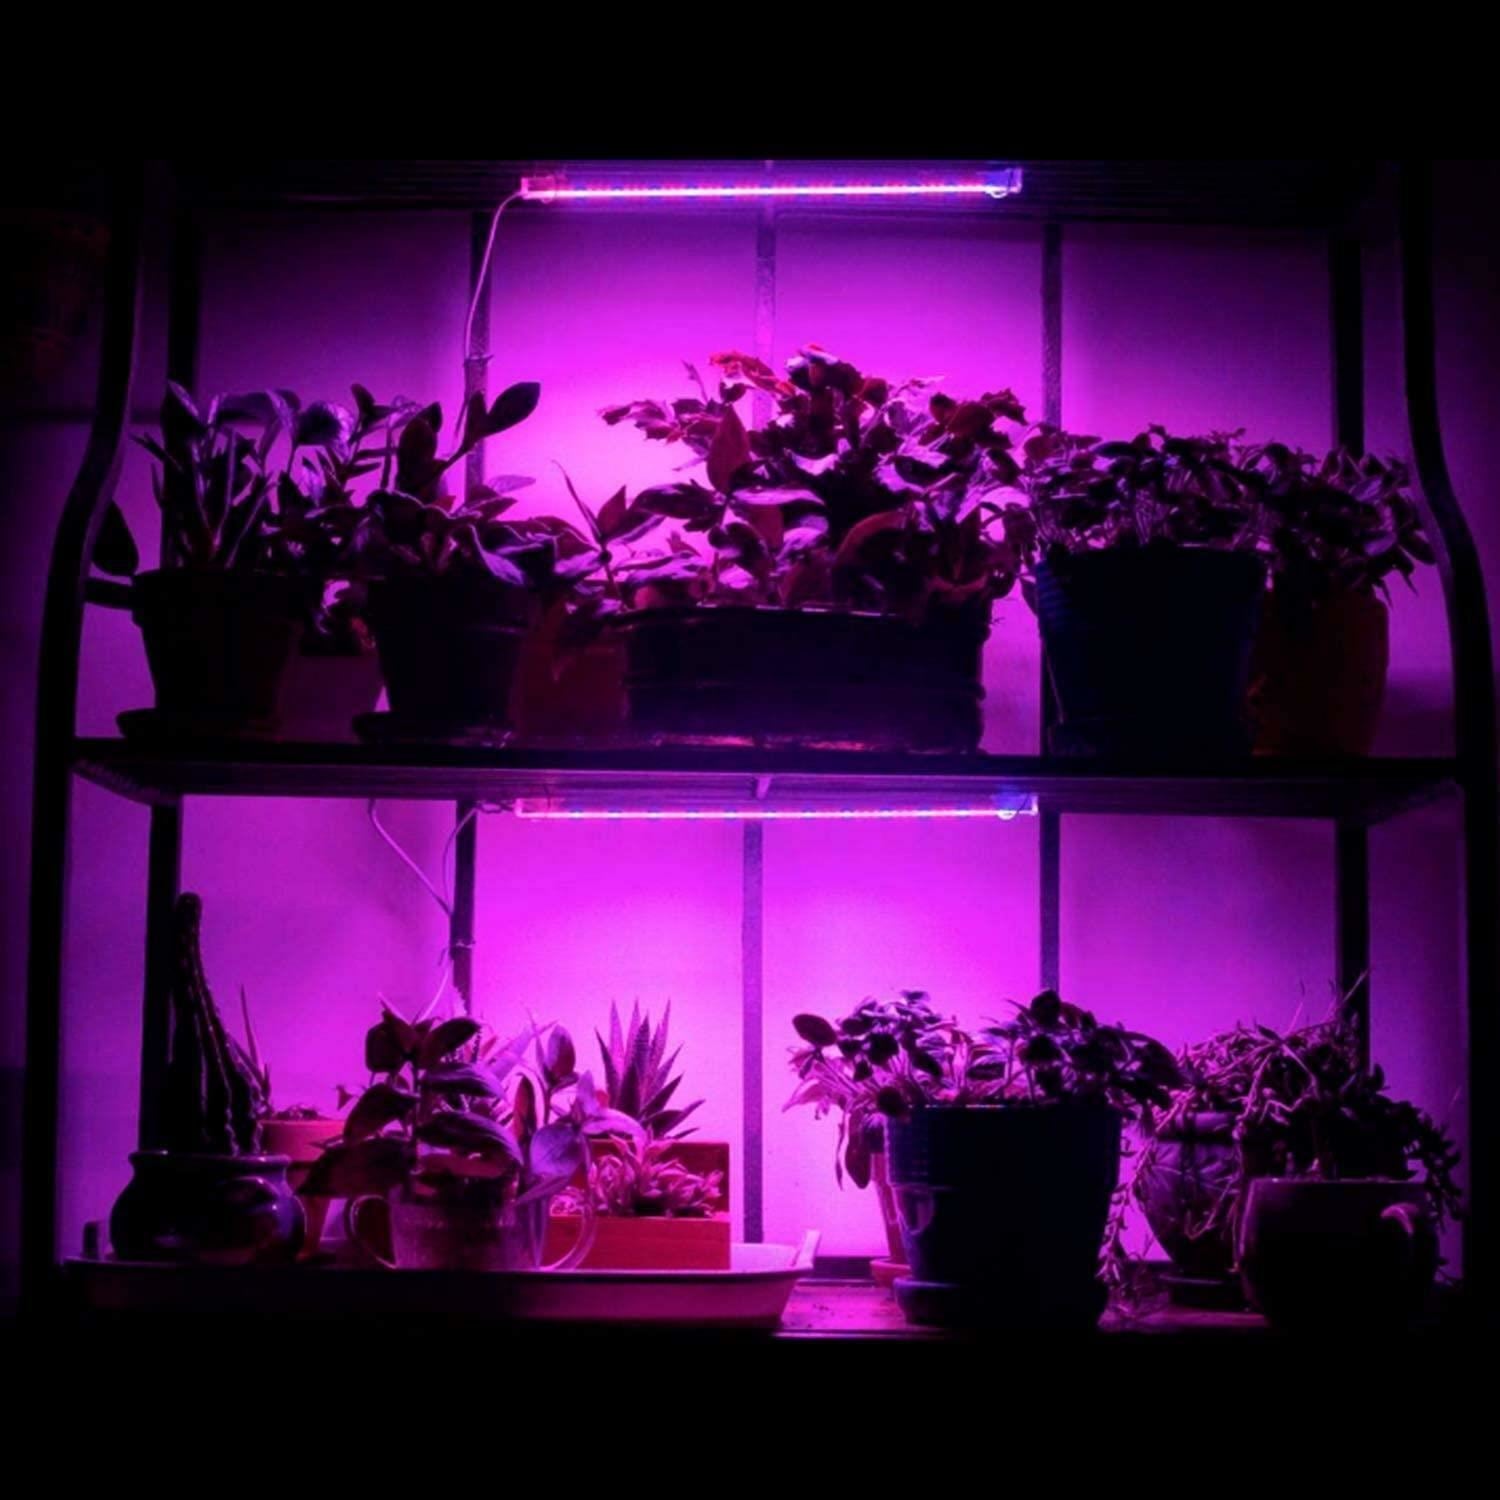 Senelux LED Grow Light Bar ZWLDT-01 Tube Strip Full Spectrum Lamp For Indoor Plant Flower Veg Growing